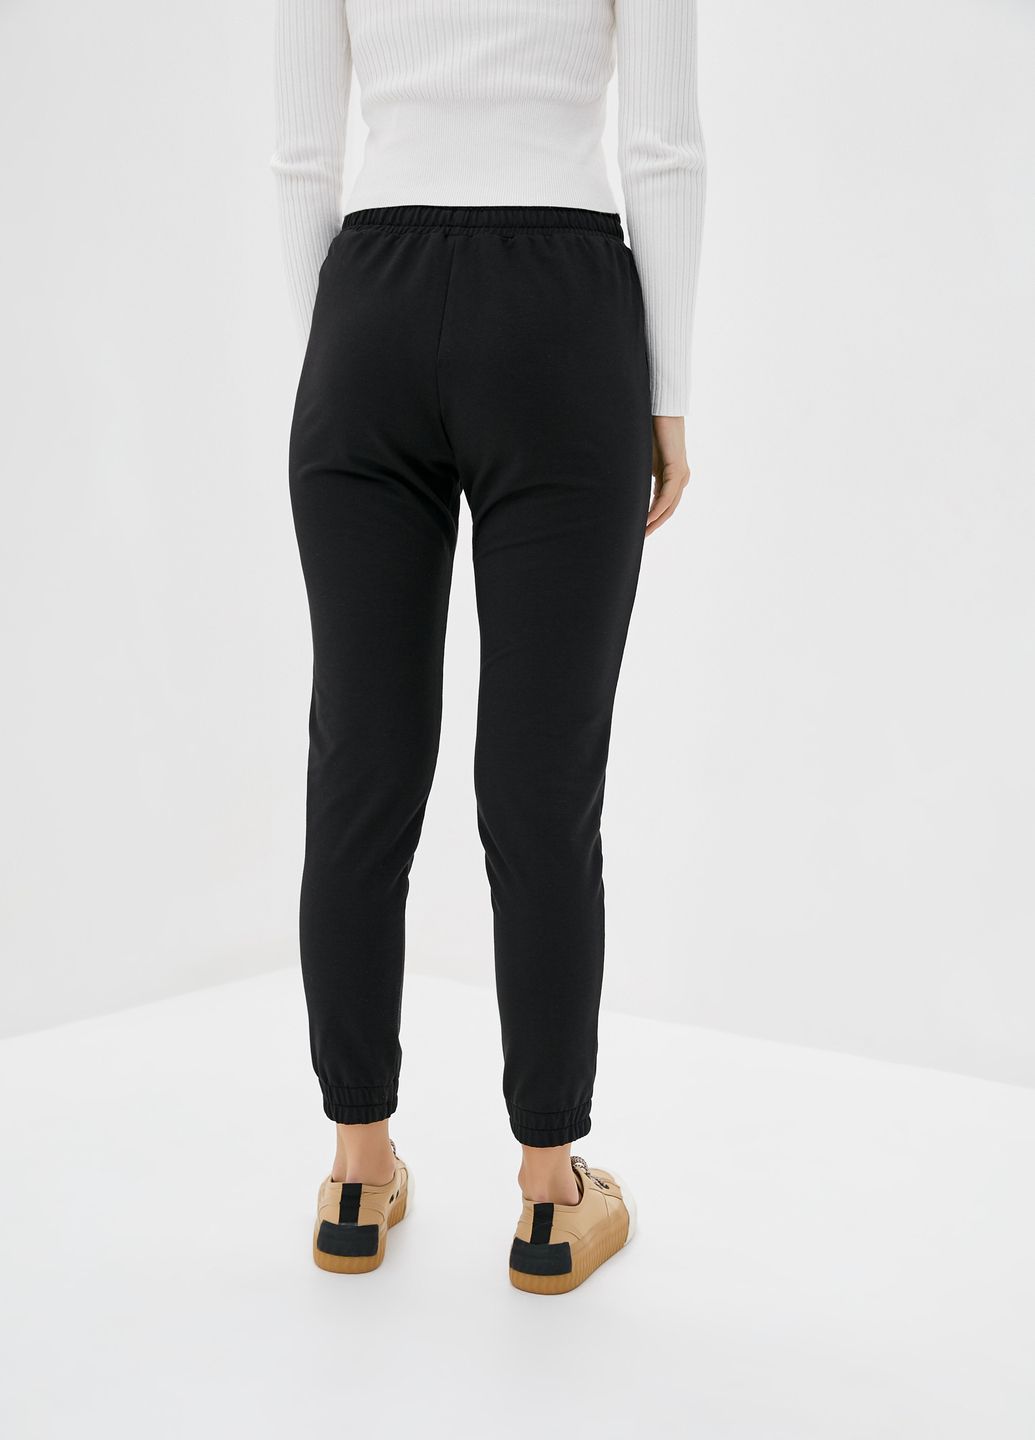 Купить Спортивные штаны женские Merlini Сити 600000055 - Черный, 42-44 в интернет-магазине